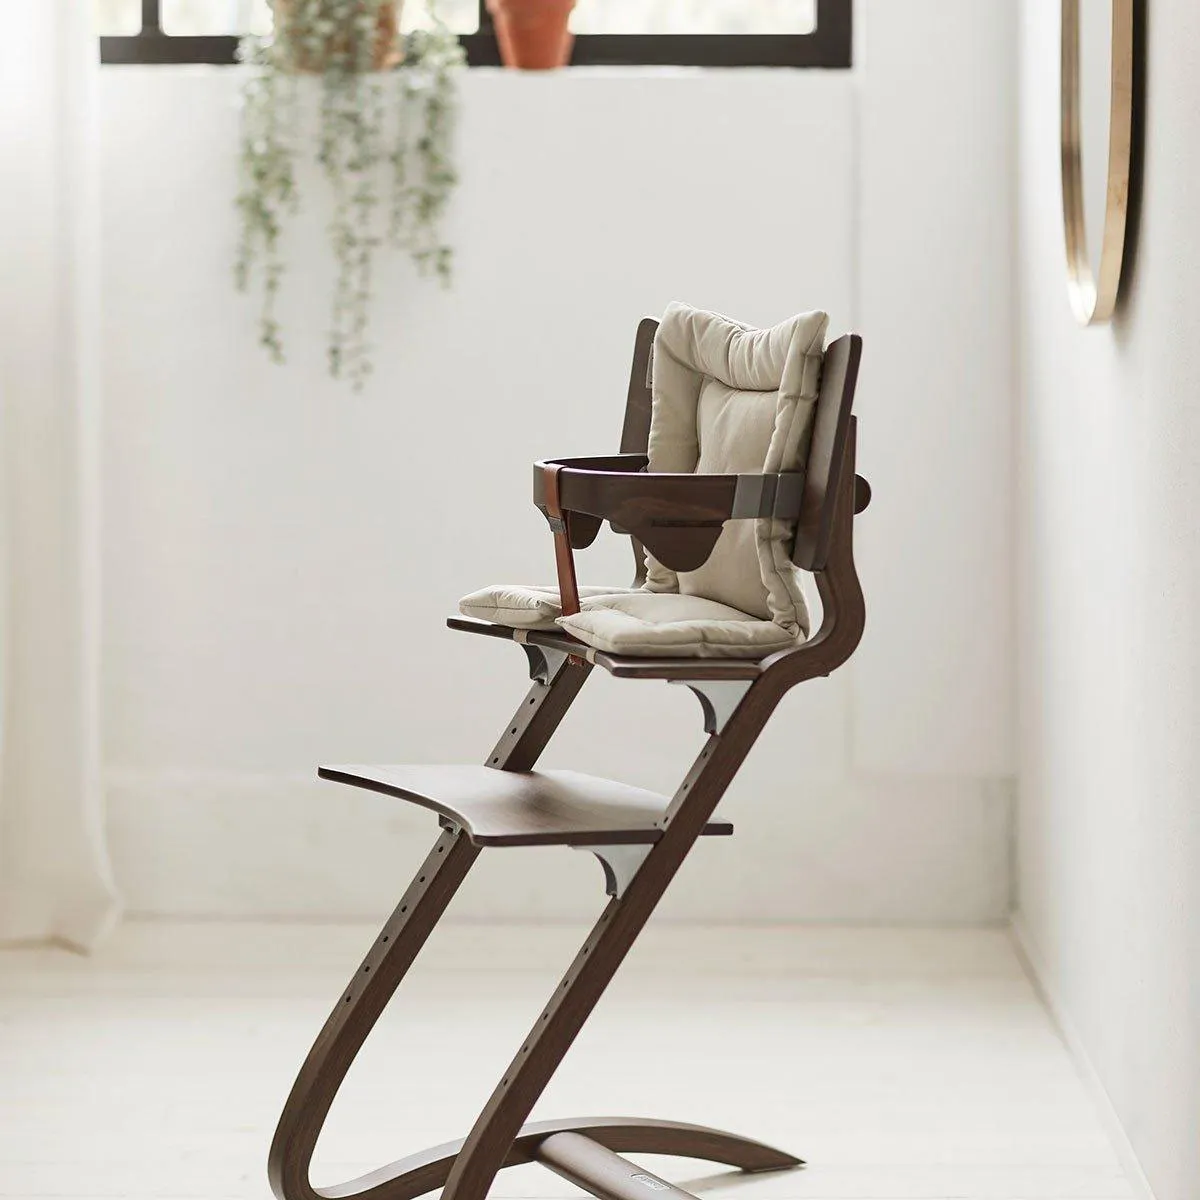 Leander uložak za stolicu, 30x50cm, Cappuccino